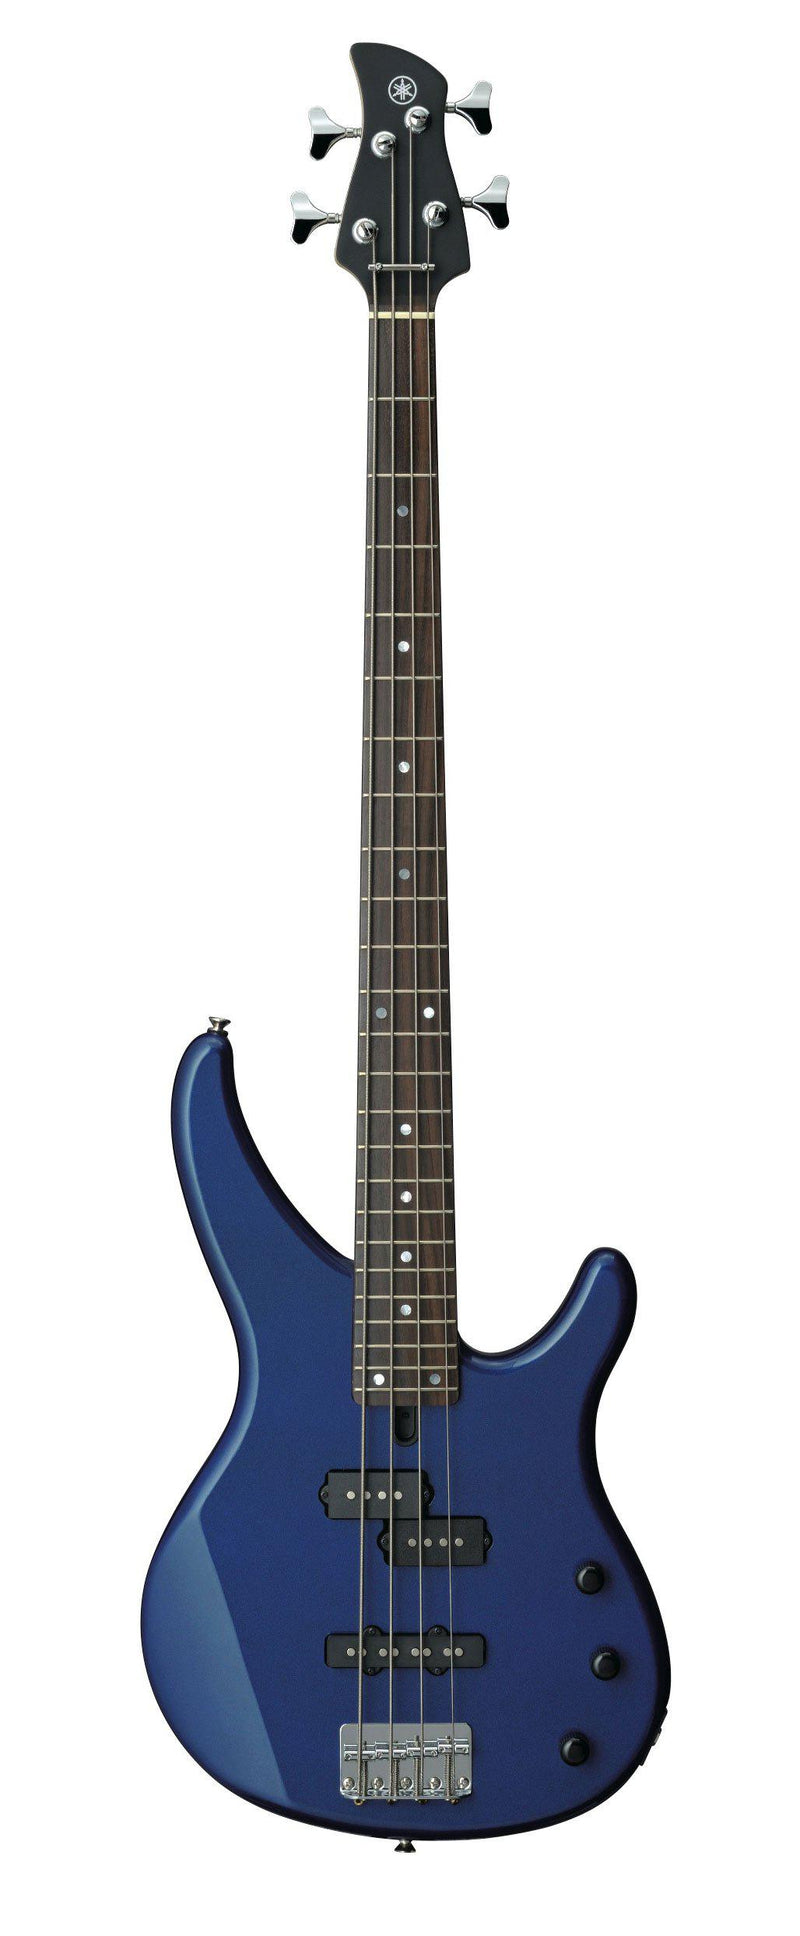 Yamaha TRBX174 Bass Guitar, Dark Metallic Blue